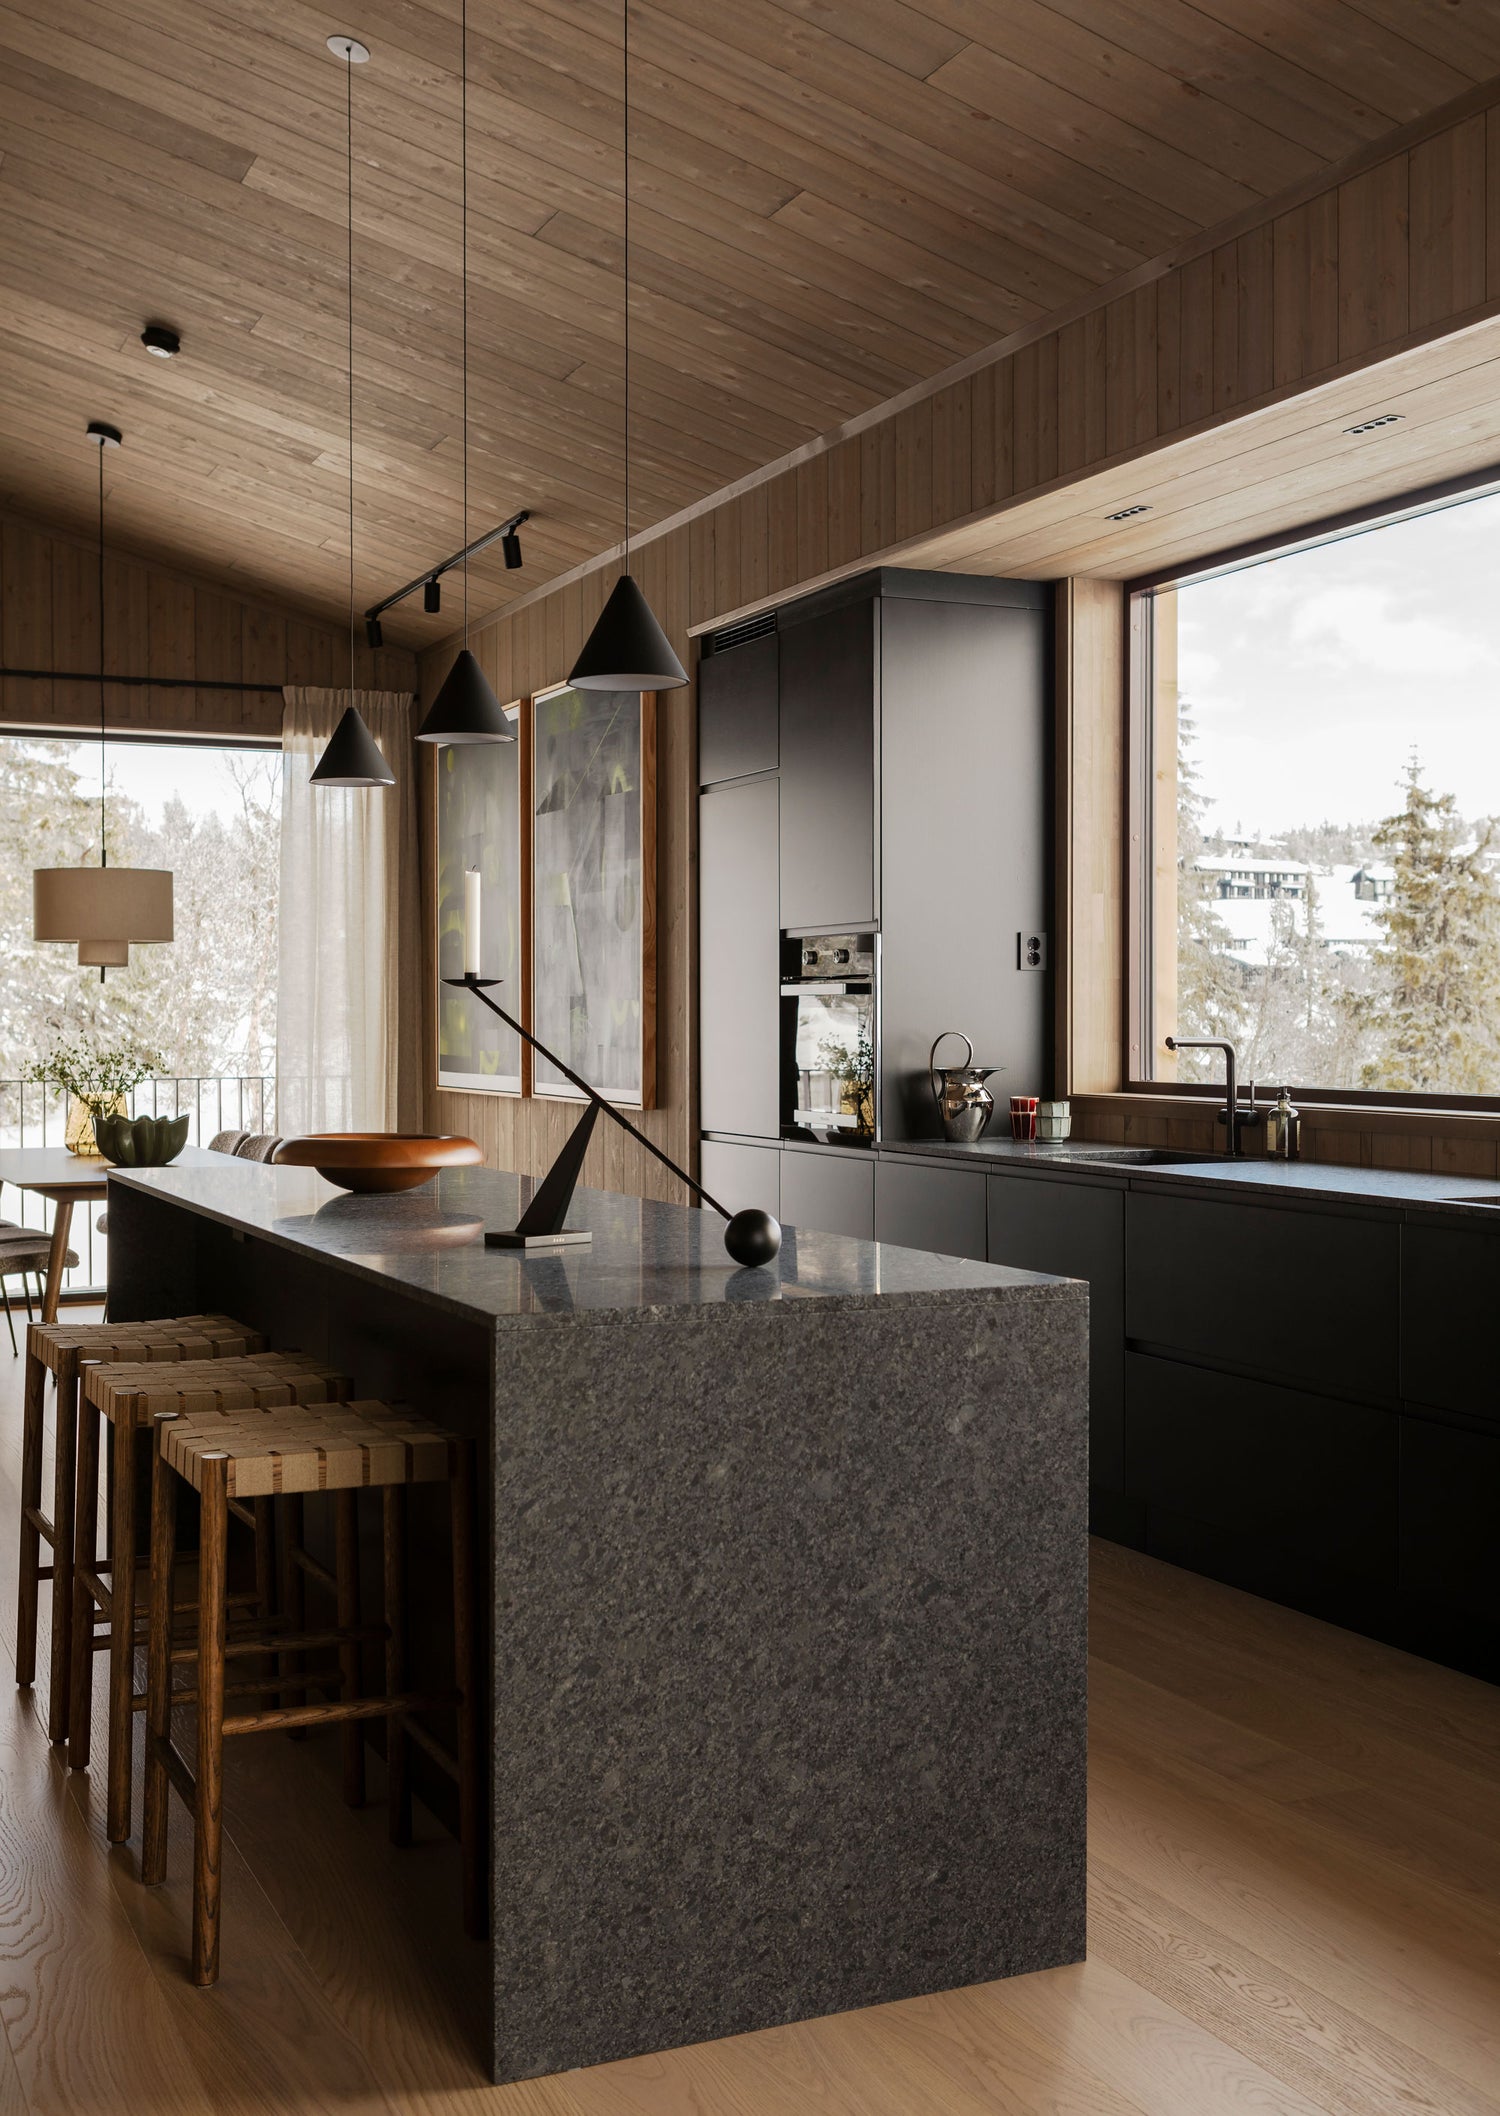 4. Kjøkken inspiasjopn hytte: Et moderne hyttekjøkken i stein blir varmt og koselig med møbler og detaljer i treverk.